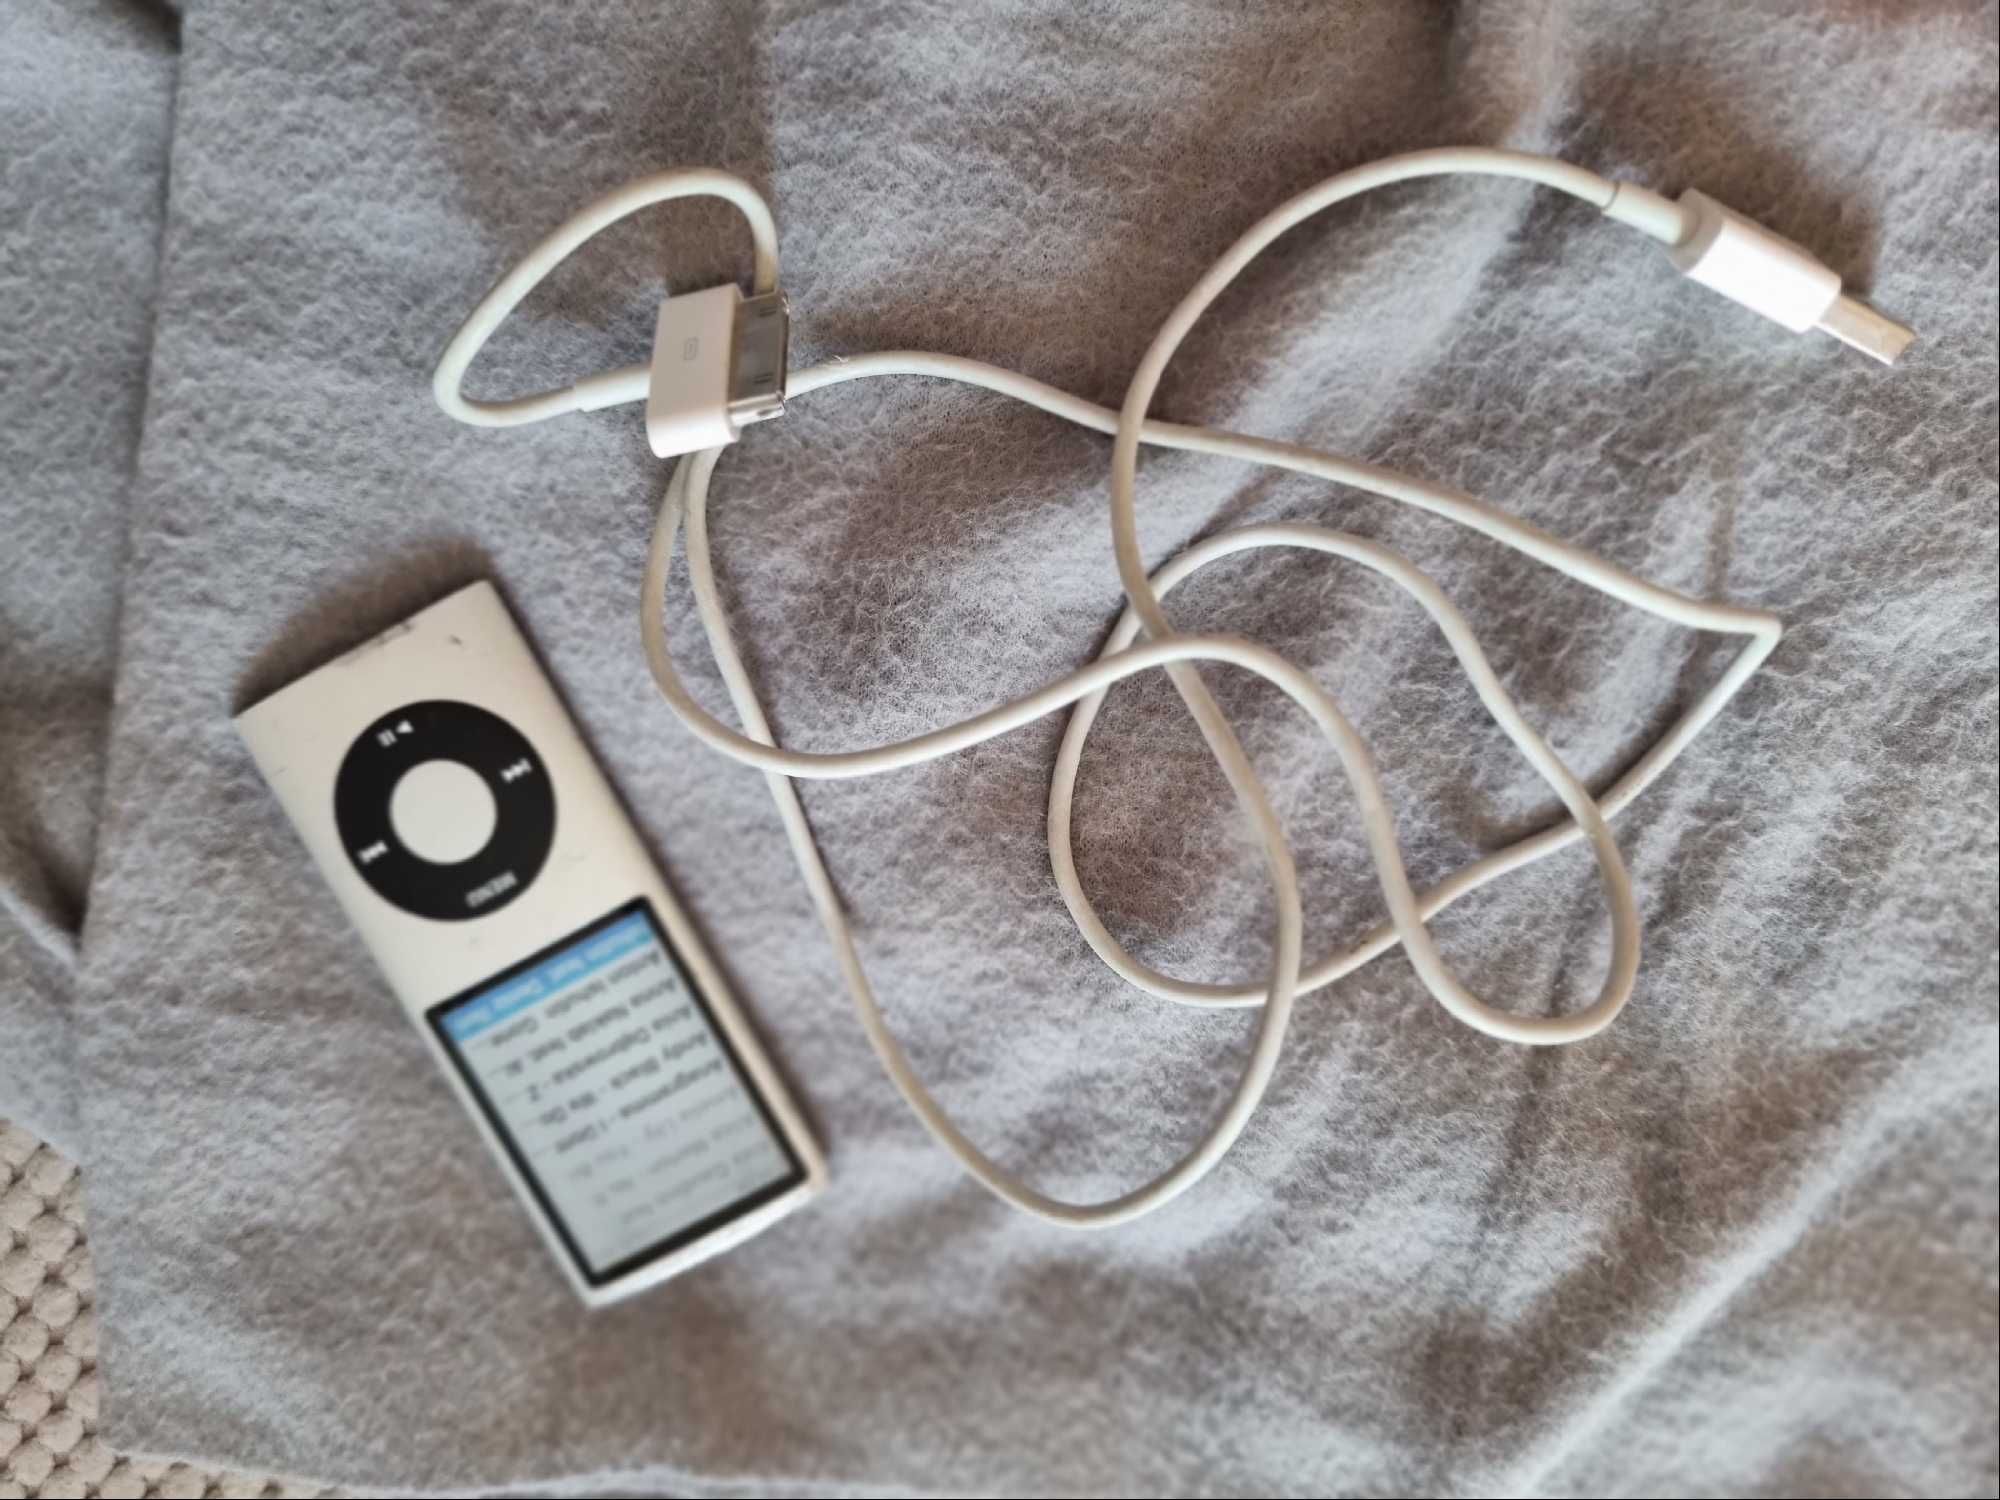 Apple iPod sprawny zamienie zamiana okazja